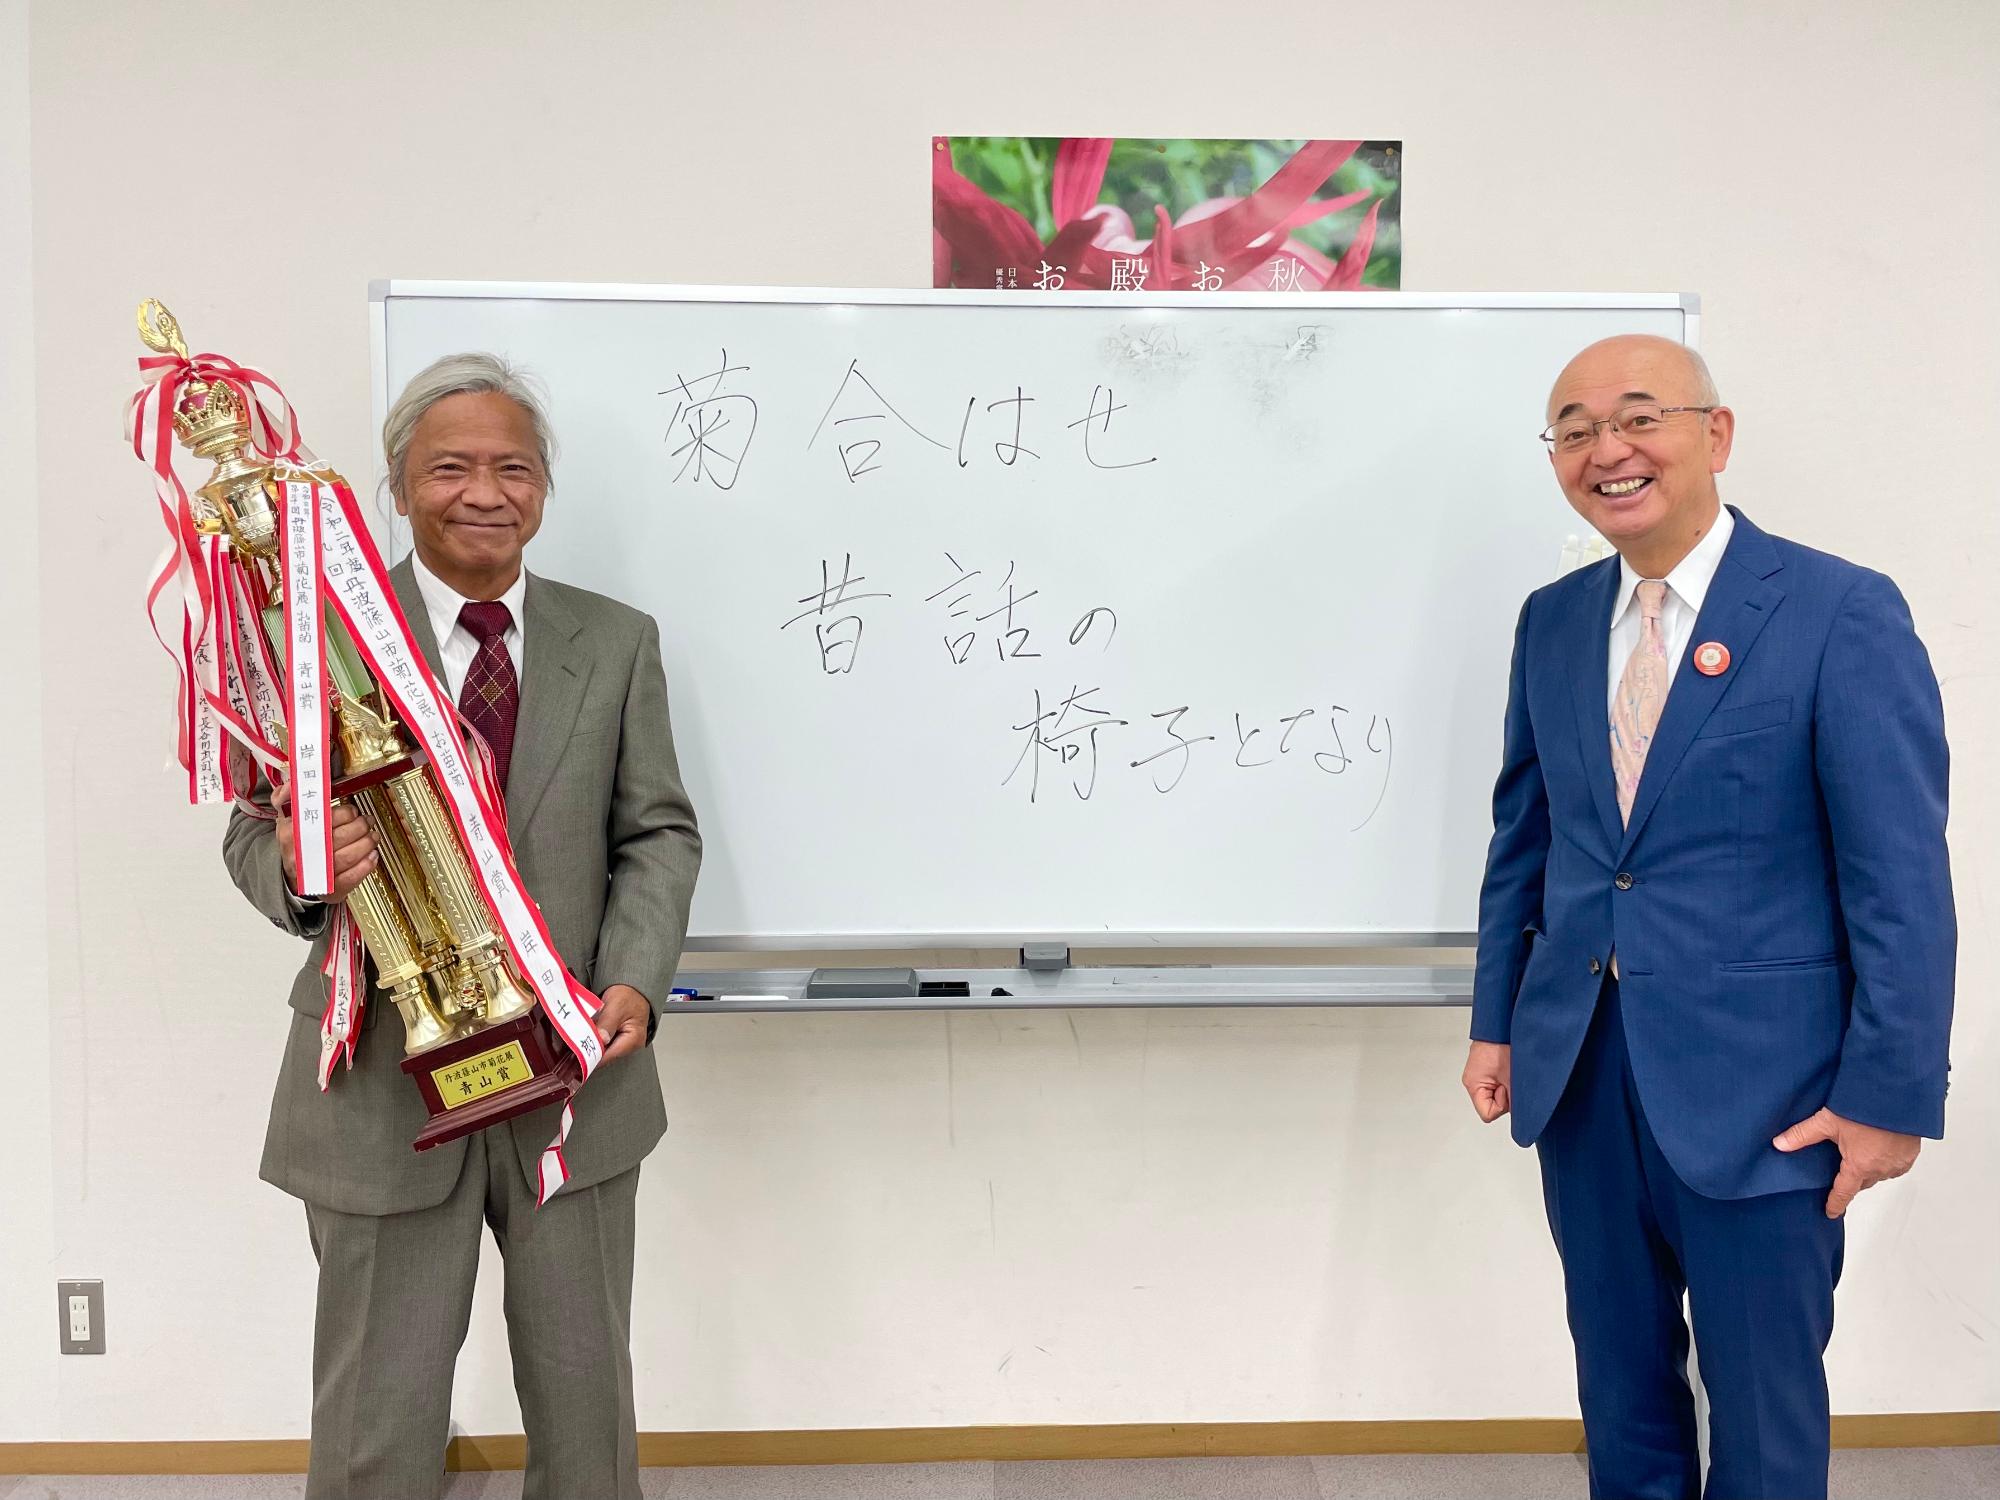 青山賞を受賞された男性がトロフィーを持ち、その隣に市長が立っている。